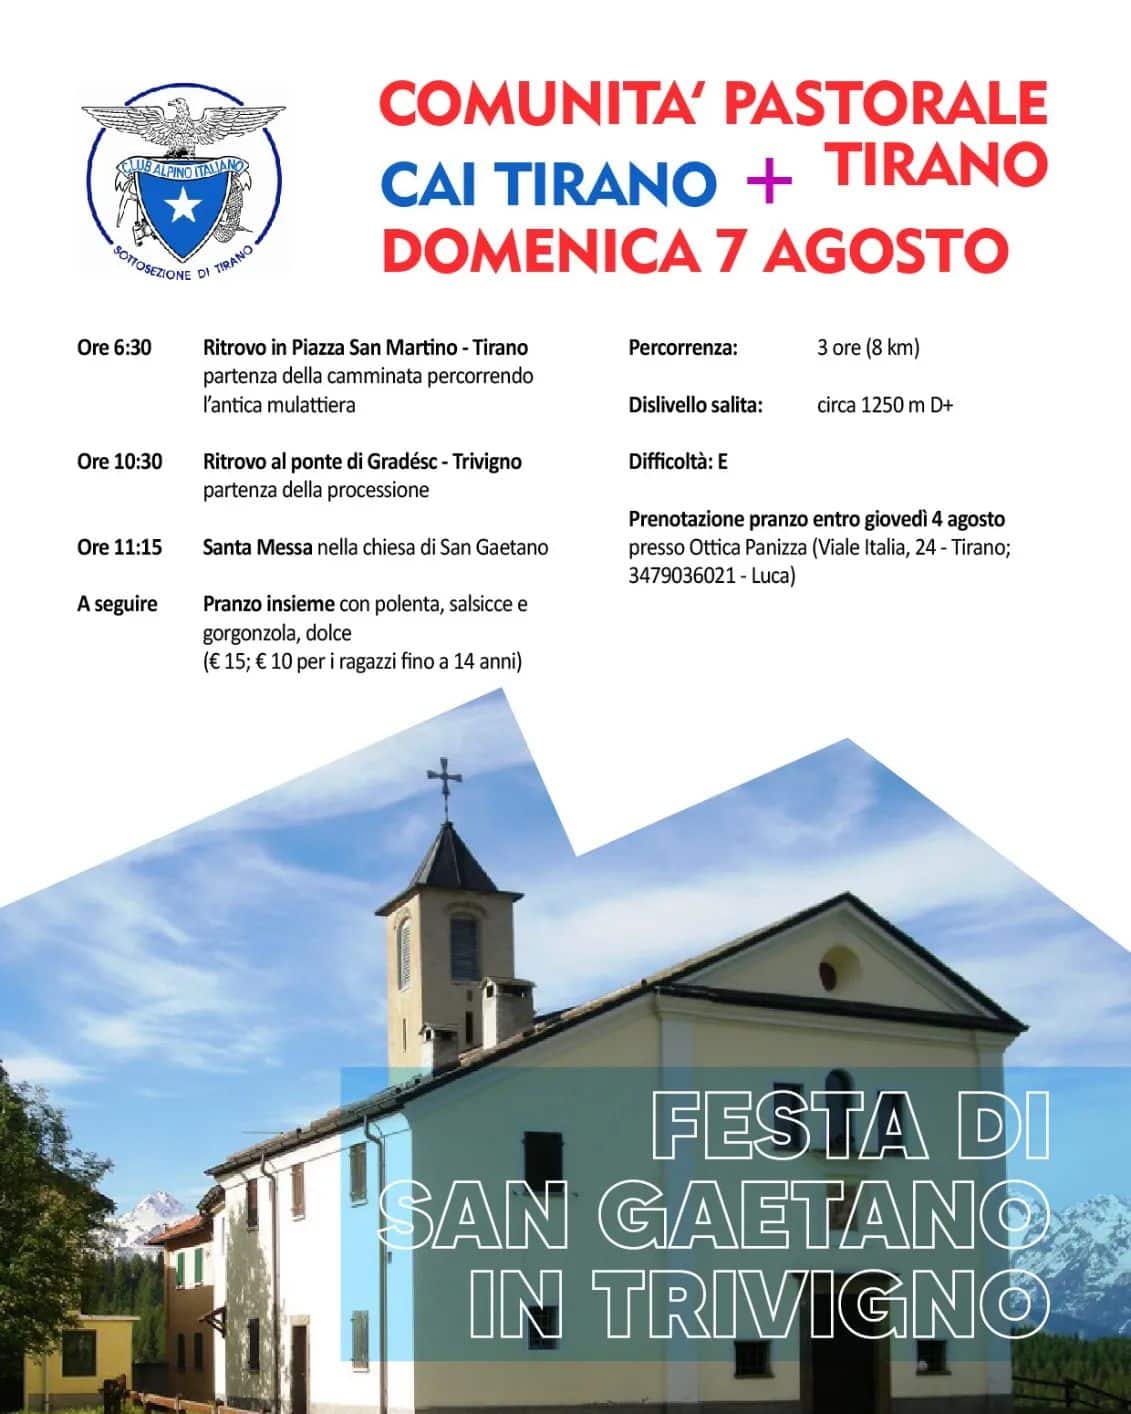 Festa di San Gaetano in Trivigno